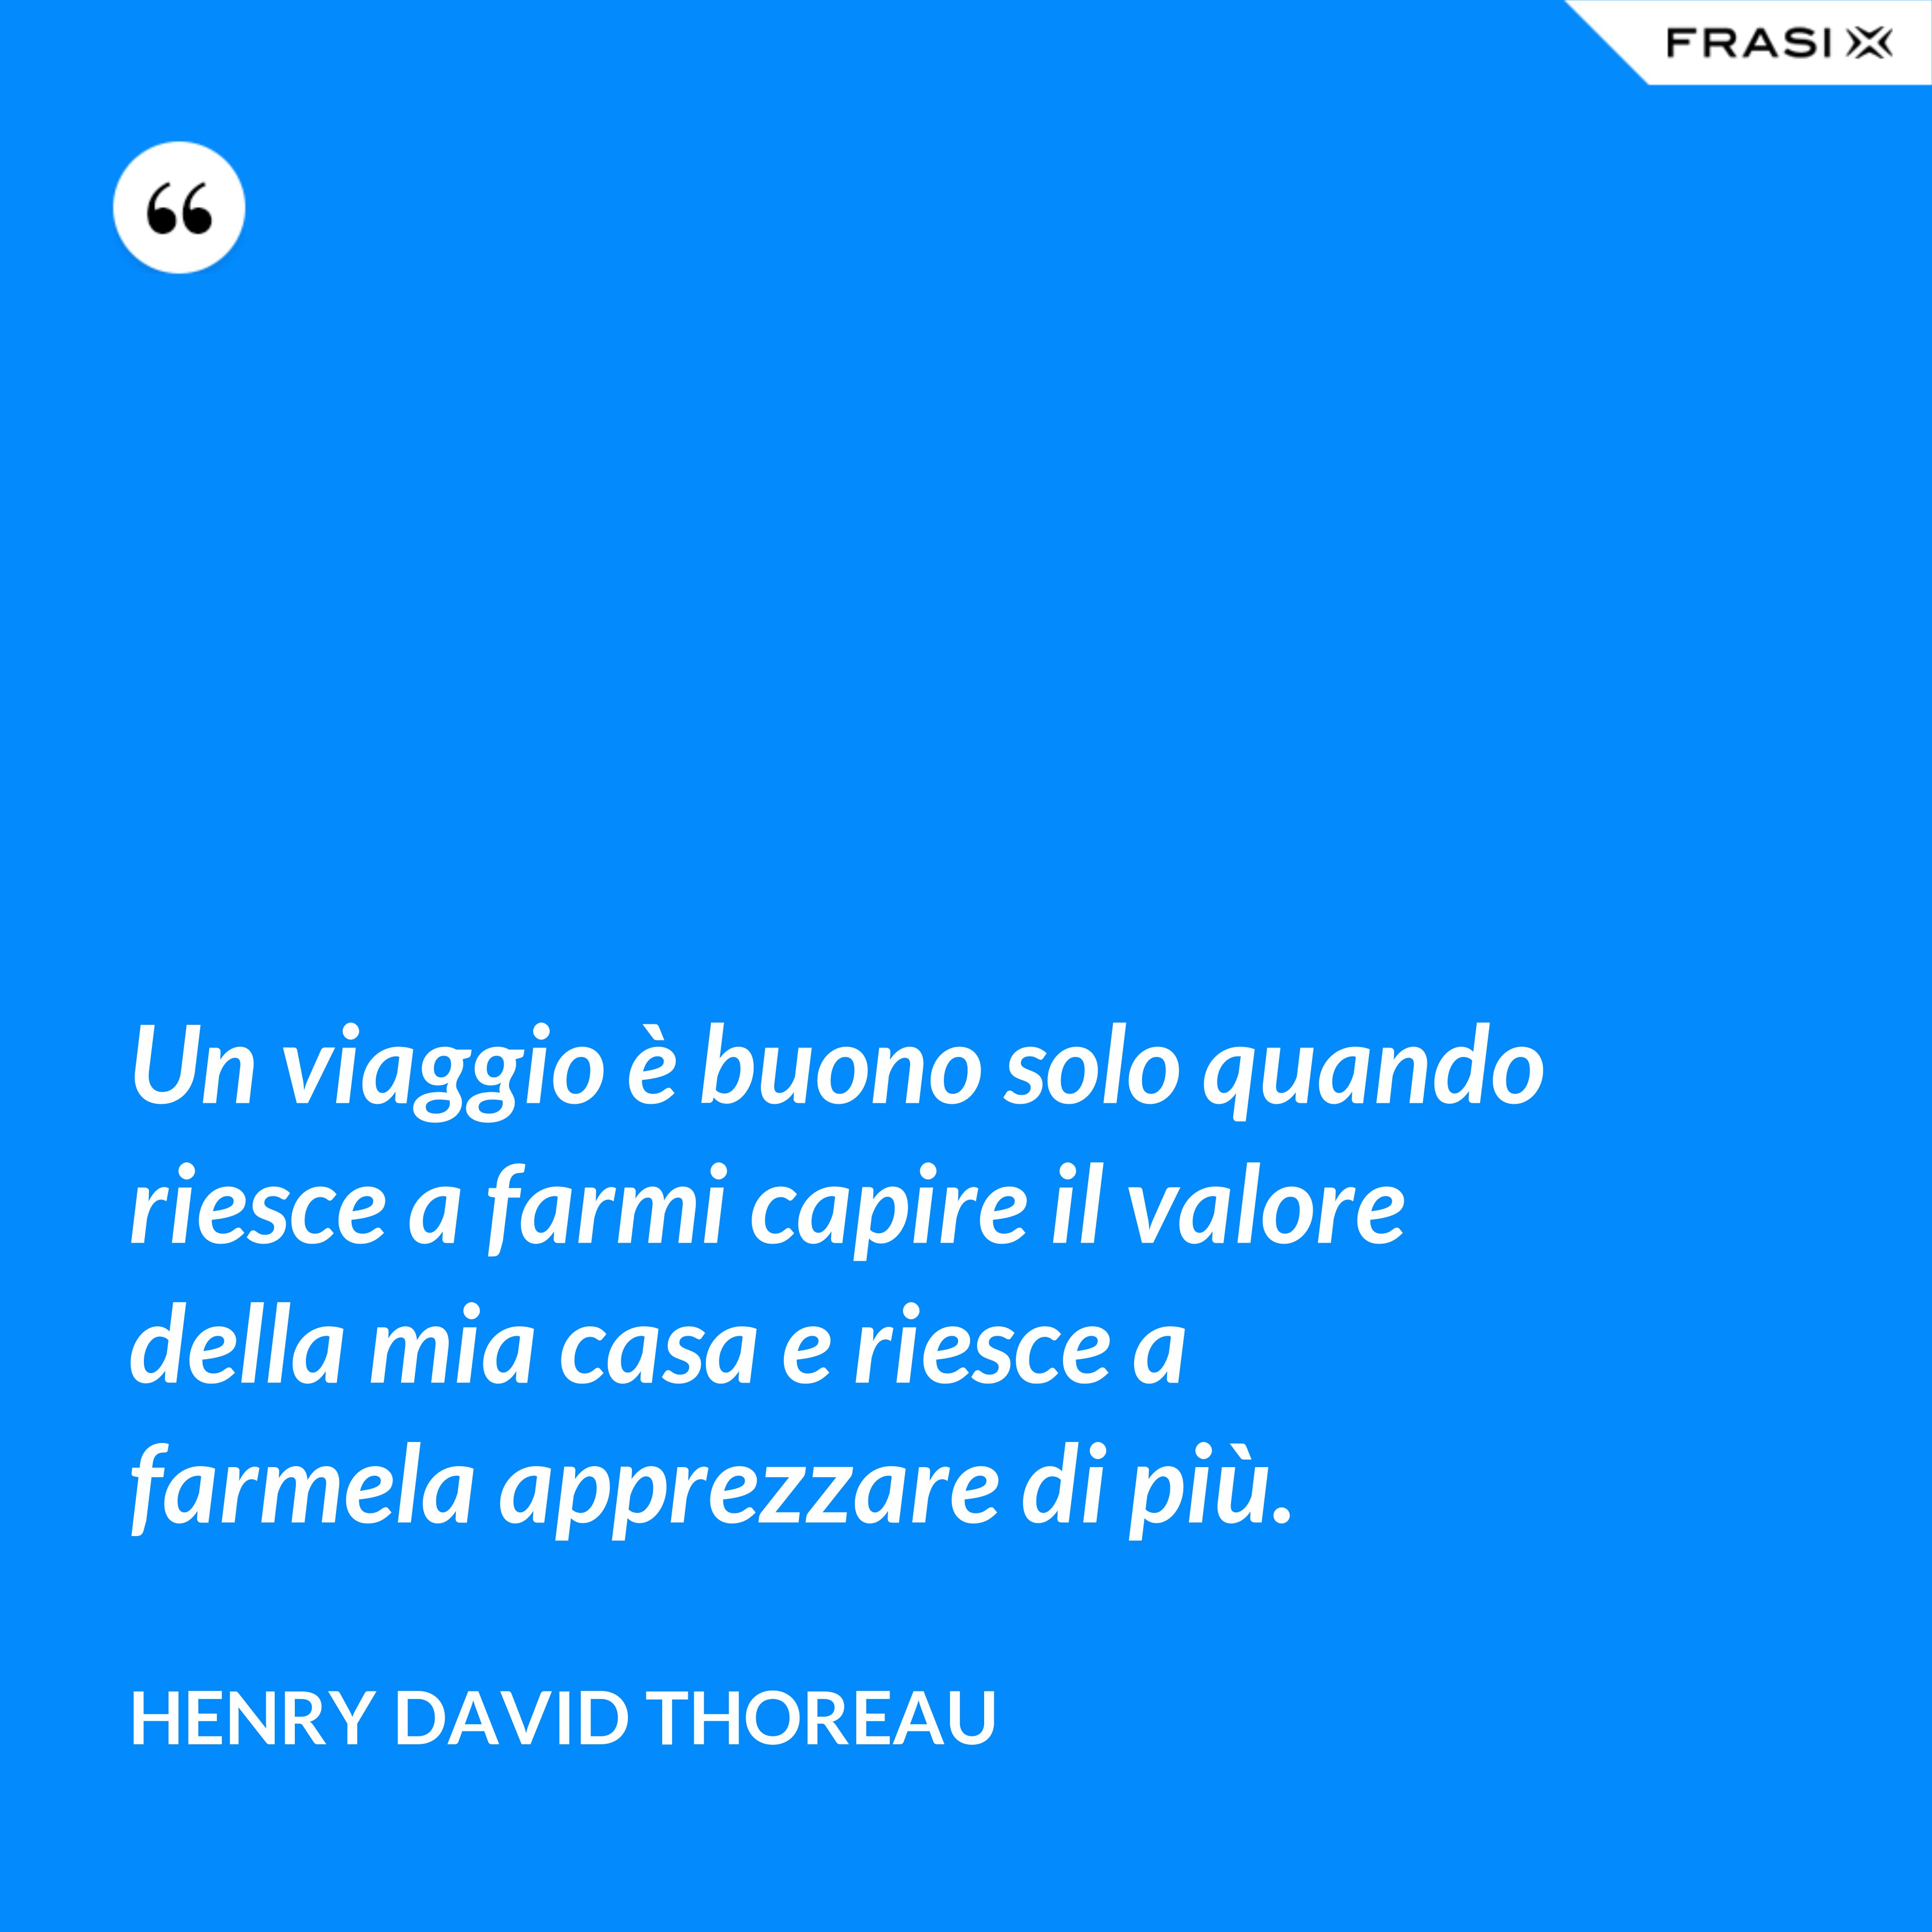 Un viaggio è buono solo quando riesce a farmi capire il valore della mia casa e riesce a farmela apprezzare di più. - Henry David Thoreau